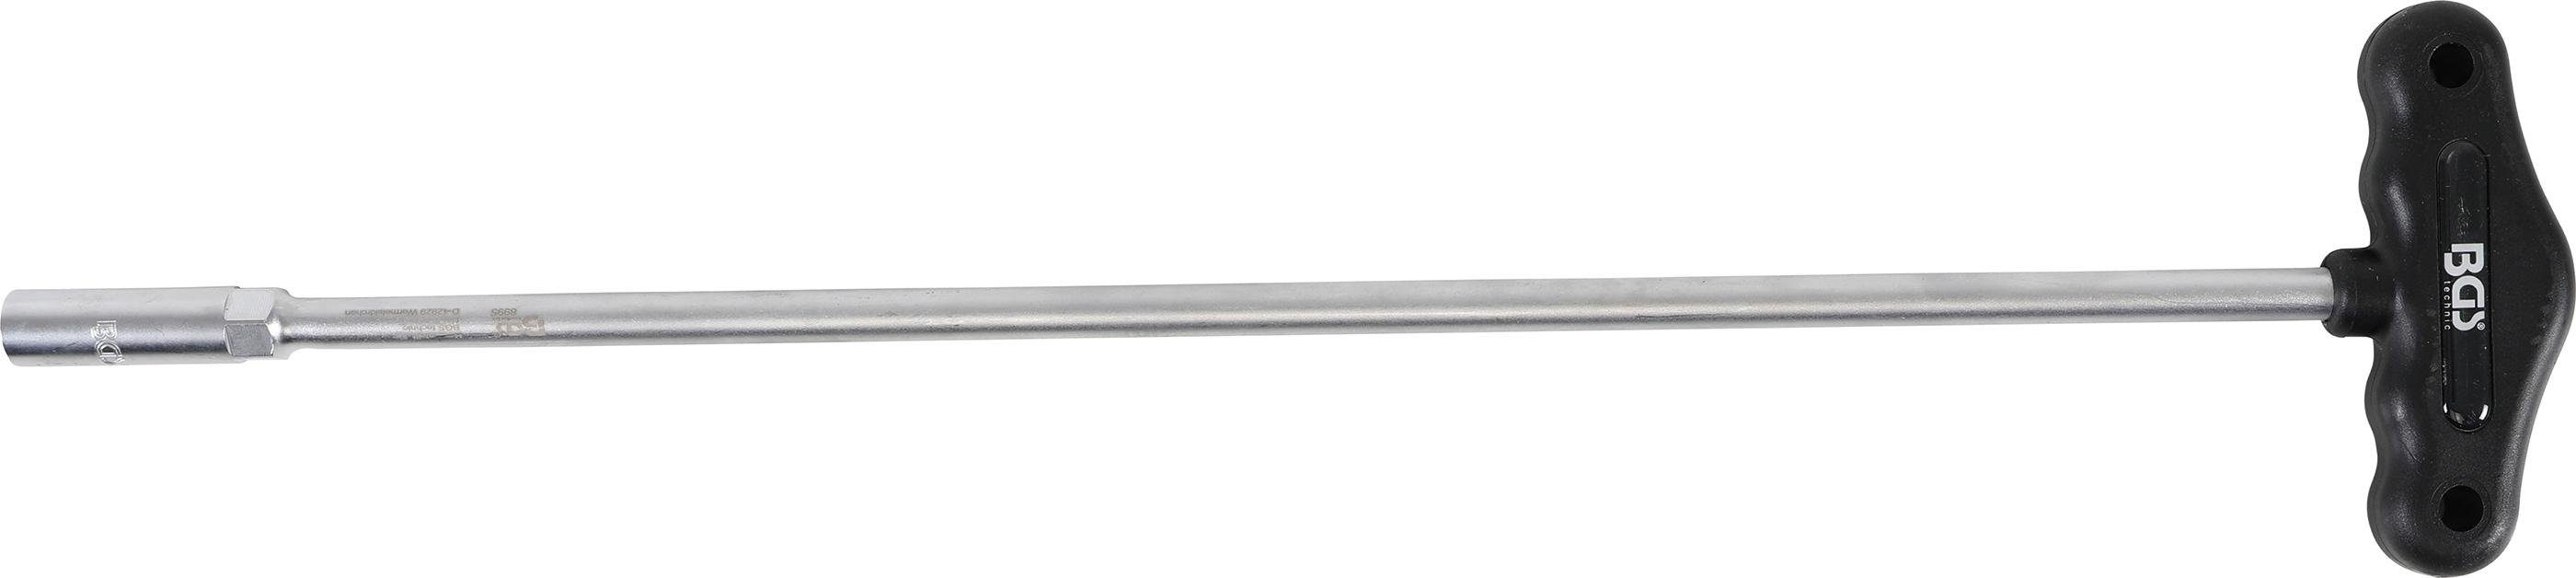 BGS technic Steckschlüssel Steckschlüssel mit T-Griff, Sechskant, Länge 430 mm, SW 10 mm